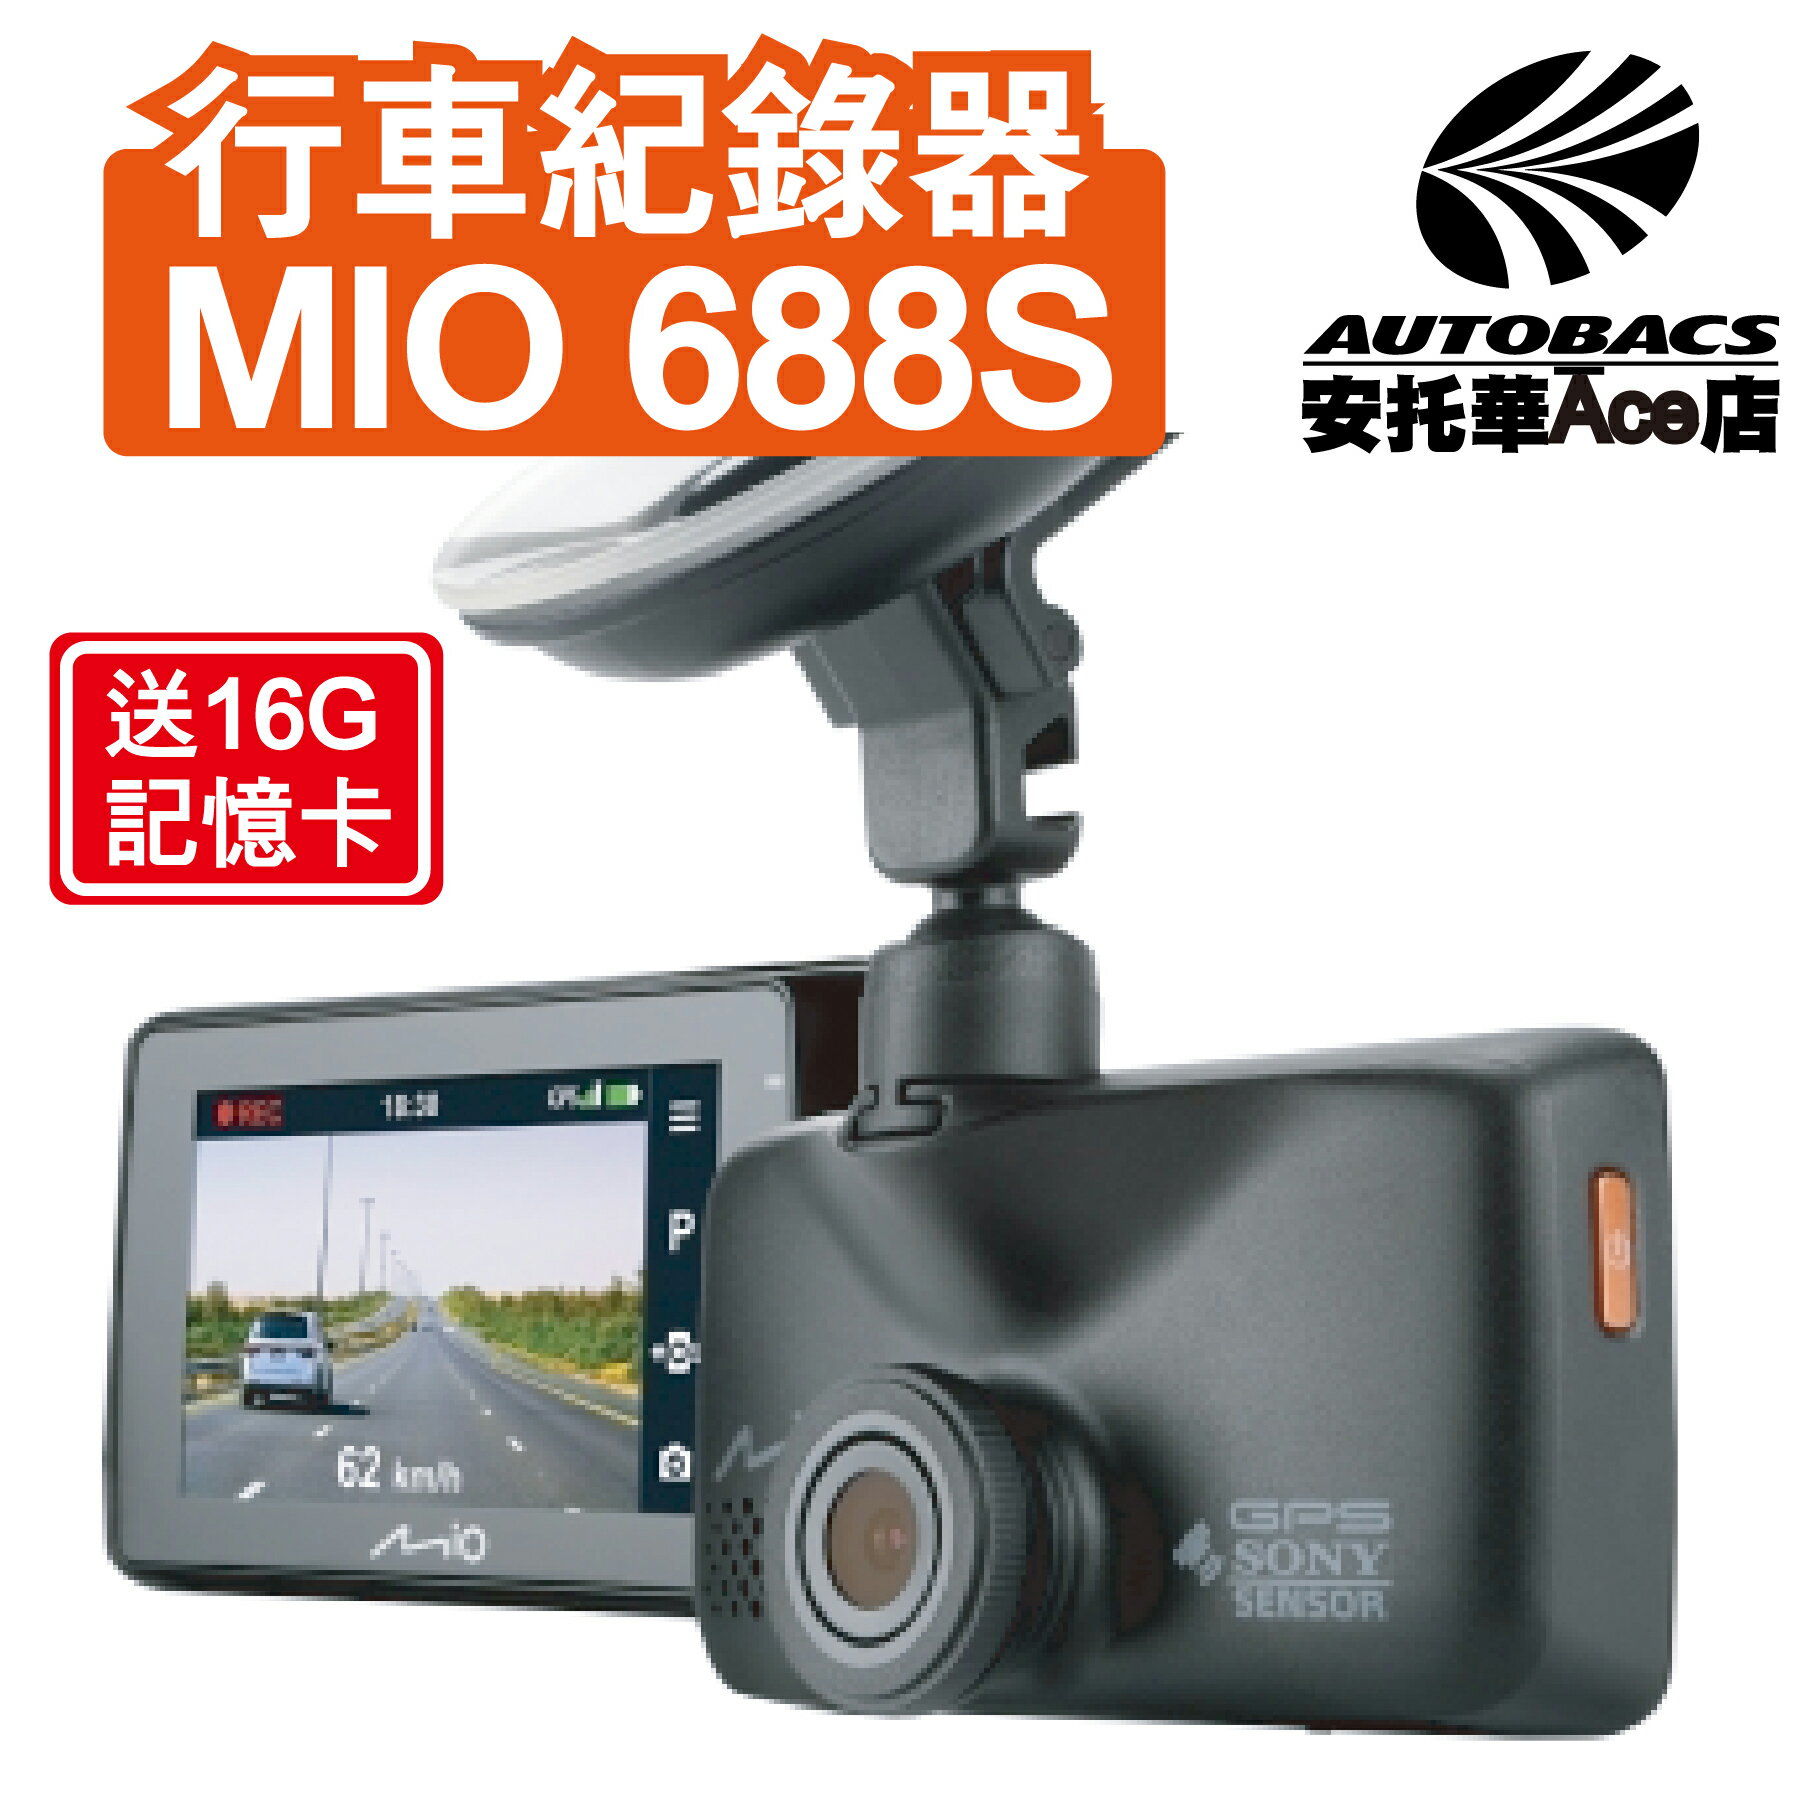 【行車首選】行車紀錄器 MIO MiVue™688s GPS SONY Sensor 送16G記憶卡 (4710887989652)